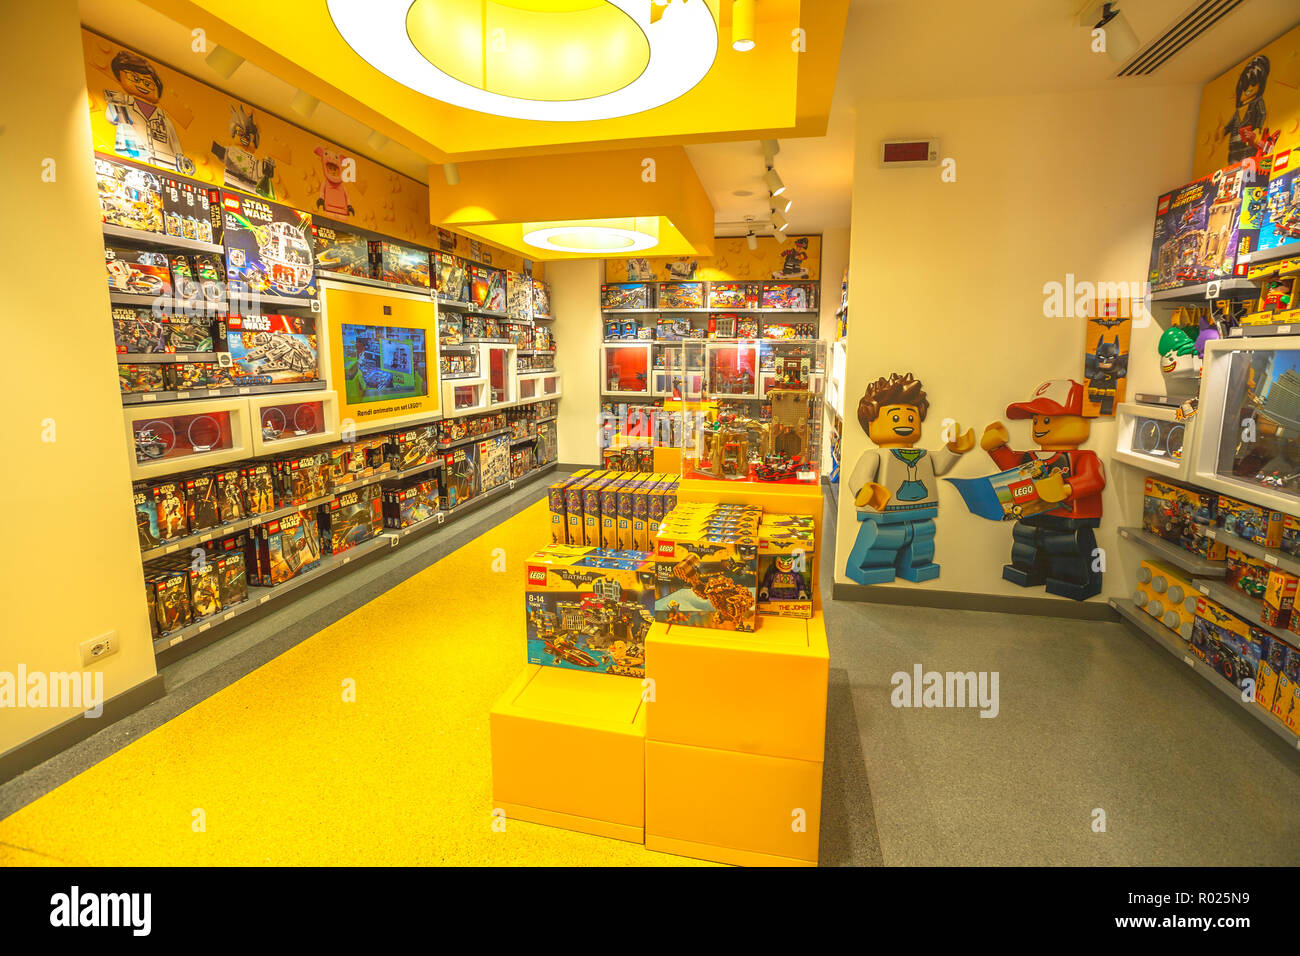 MILAN, ITALIE - mars 7, 2017 : magasin de jouets de Milan, des briques Lego. Sur la Piazza San Babila square à la fin du Corso Vittorio Emanuele II de la Piazza Duomo Square Banque D'Images